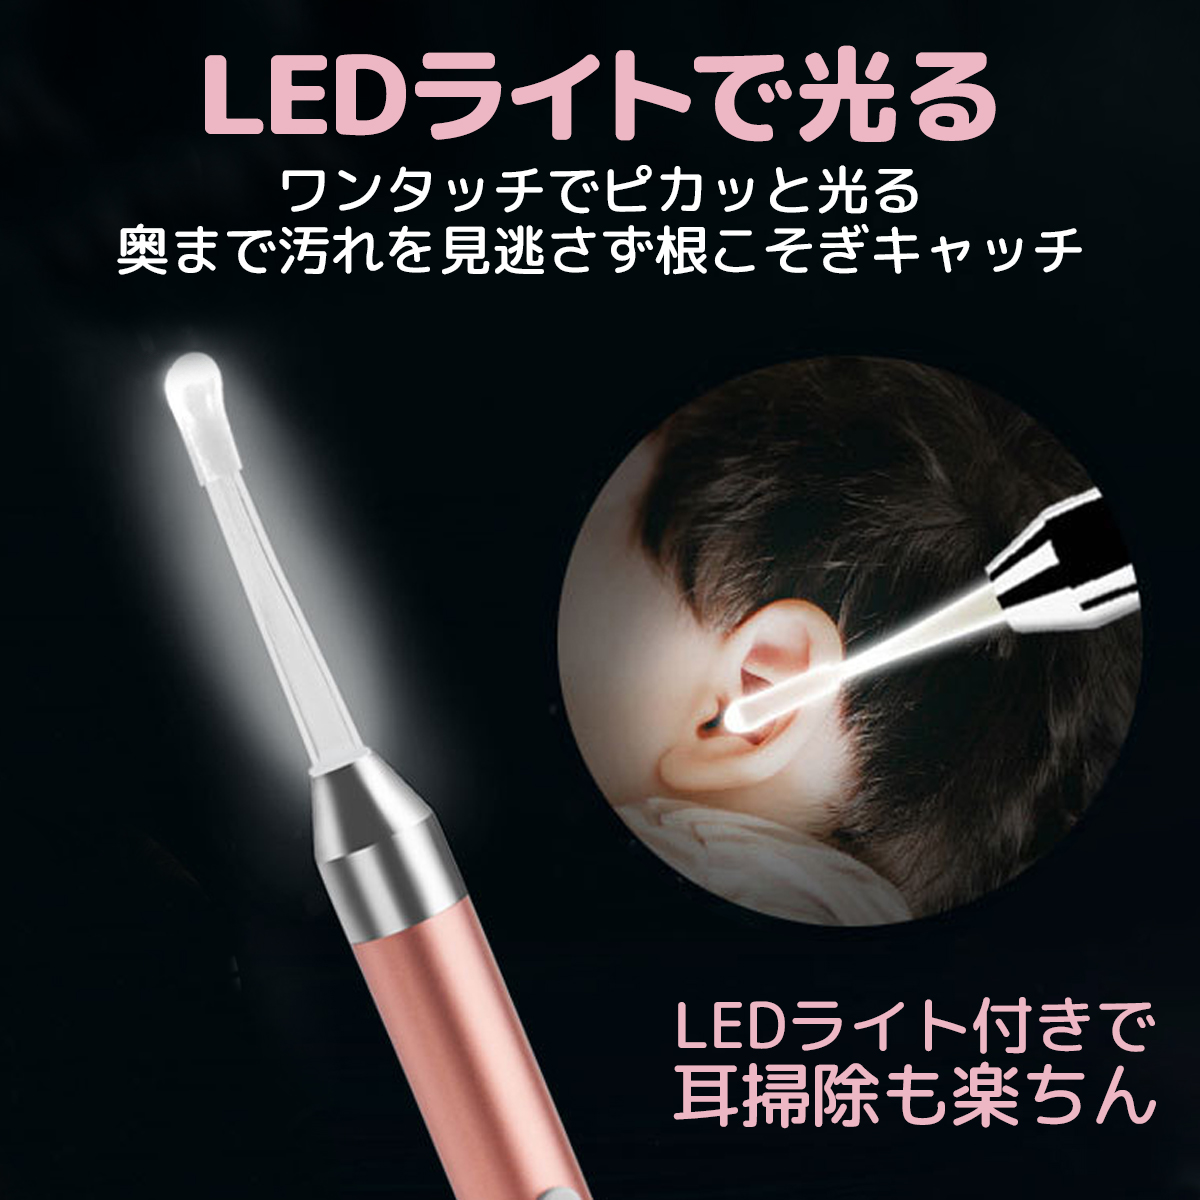 光る耳かき 耳掃除 耳かき ライト LED USB 充電式 ピンセット